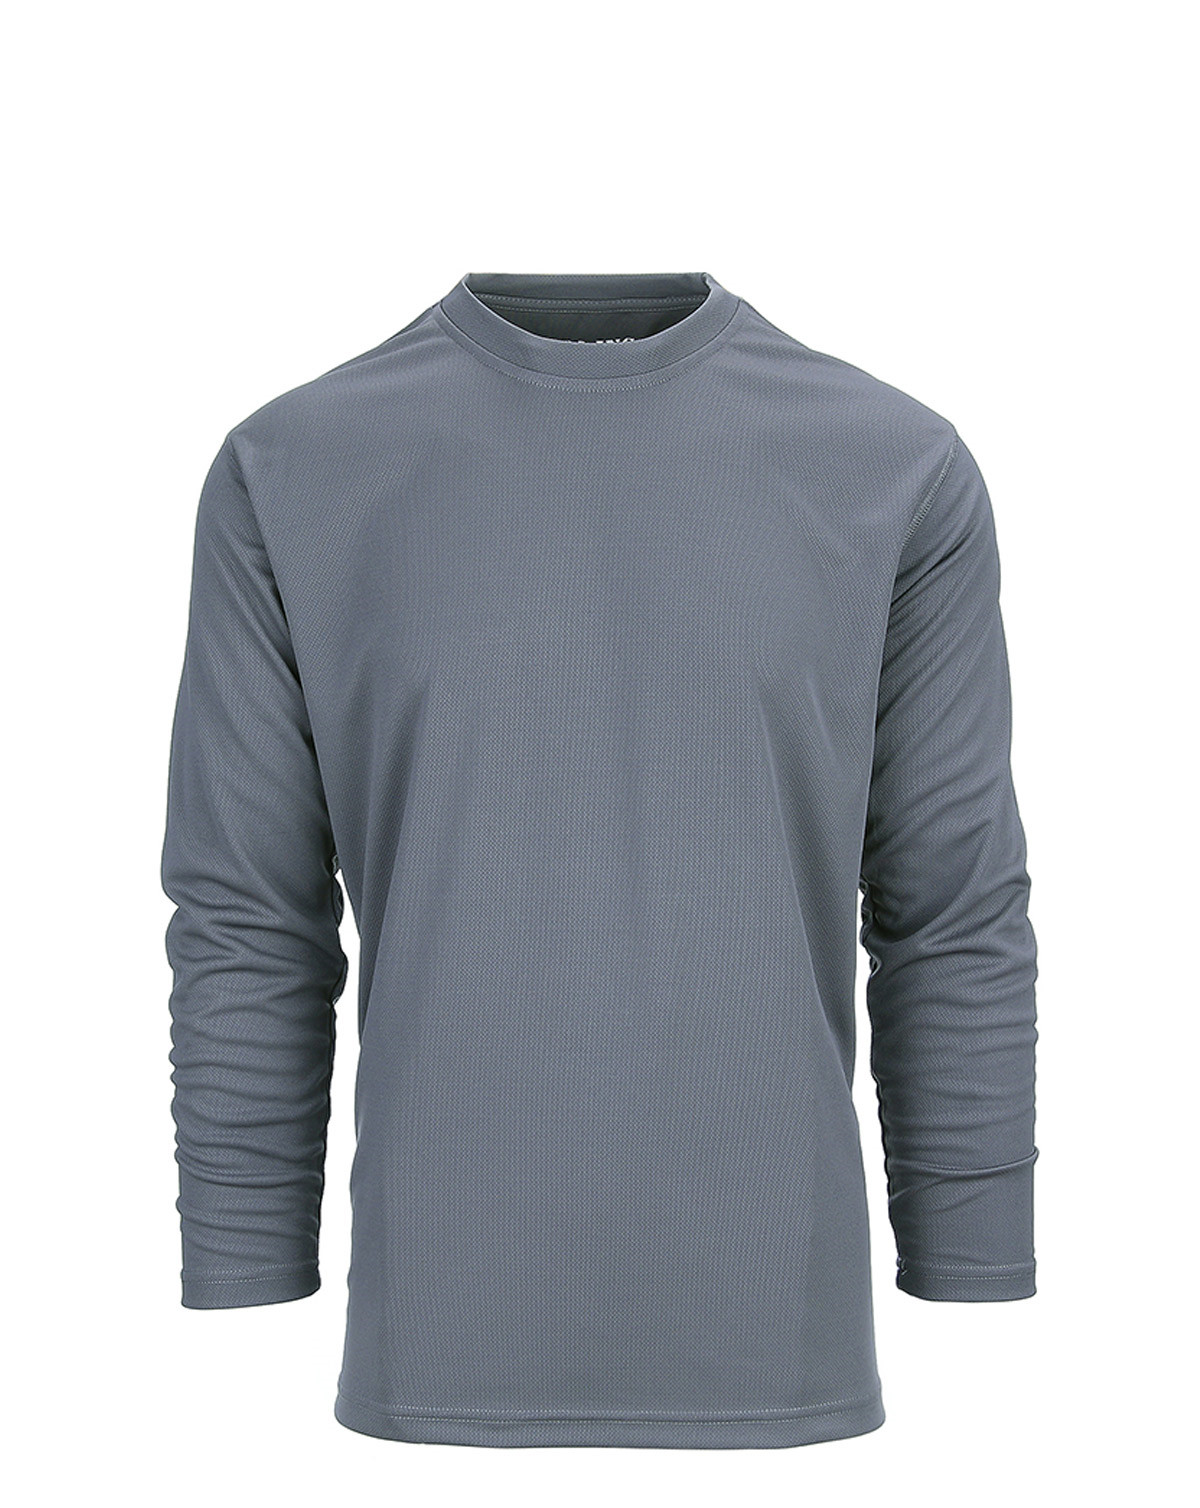 Fostex Tactical T-shirt Quick Dry Long Sleeve (Grå, 2XL)